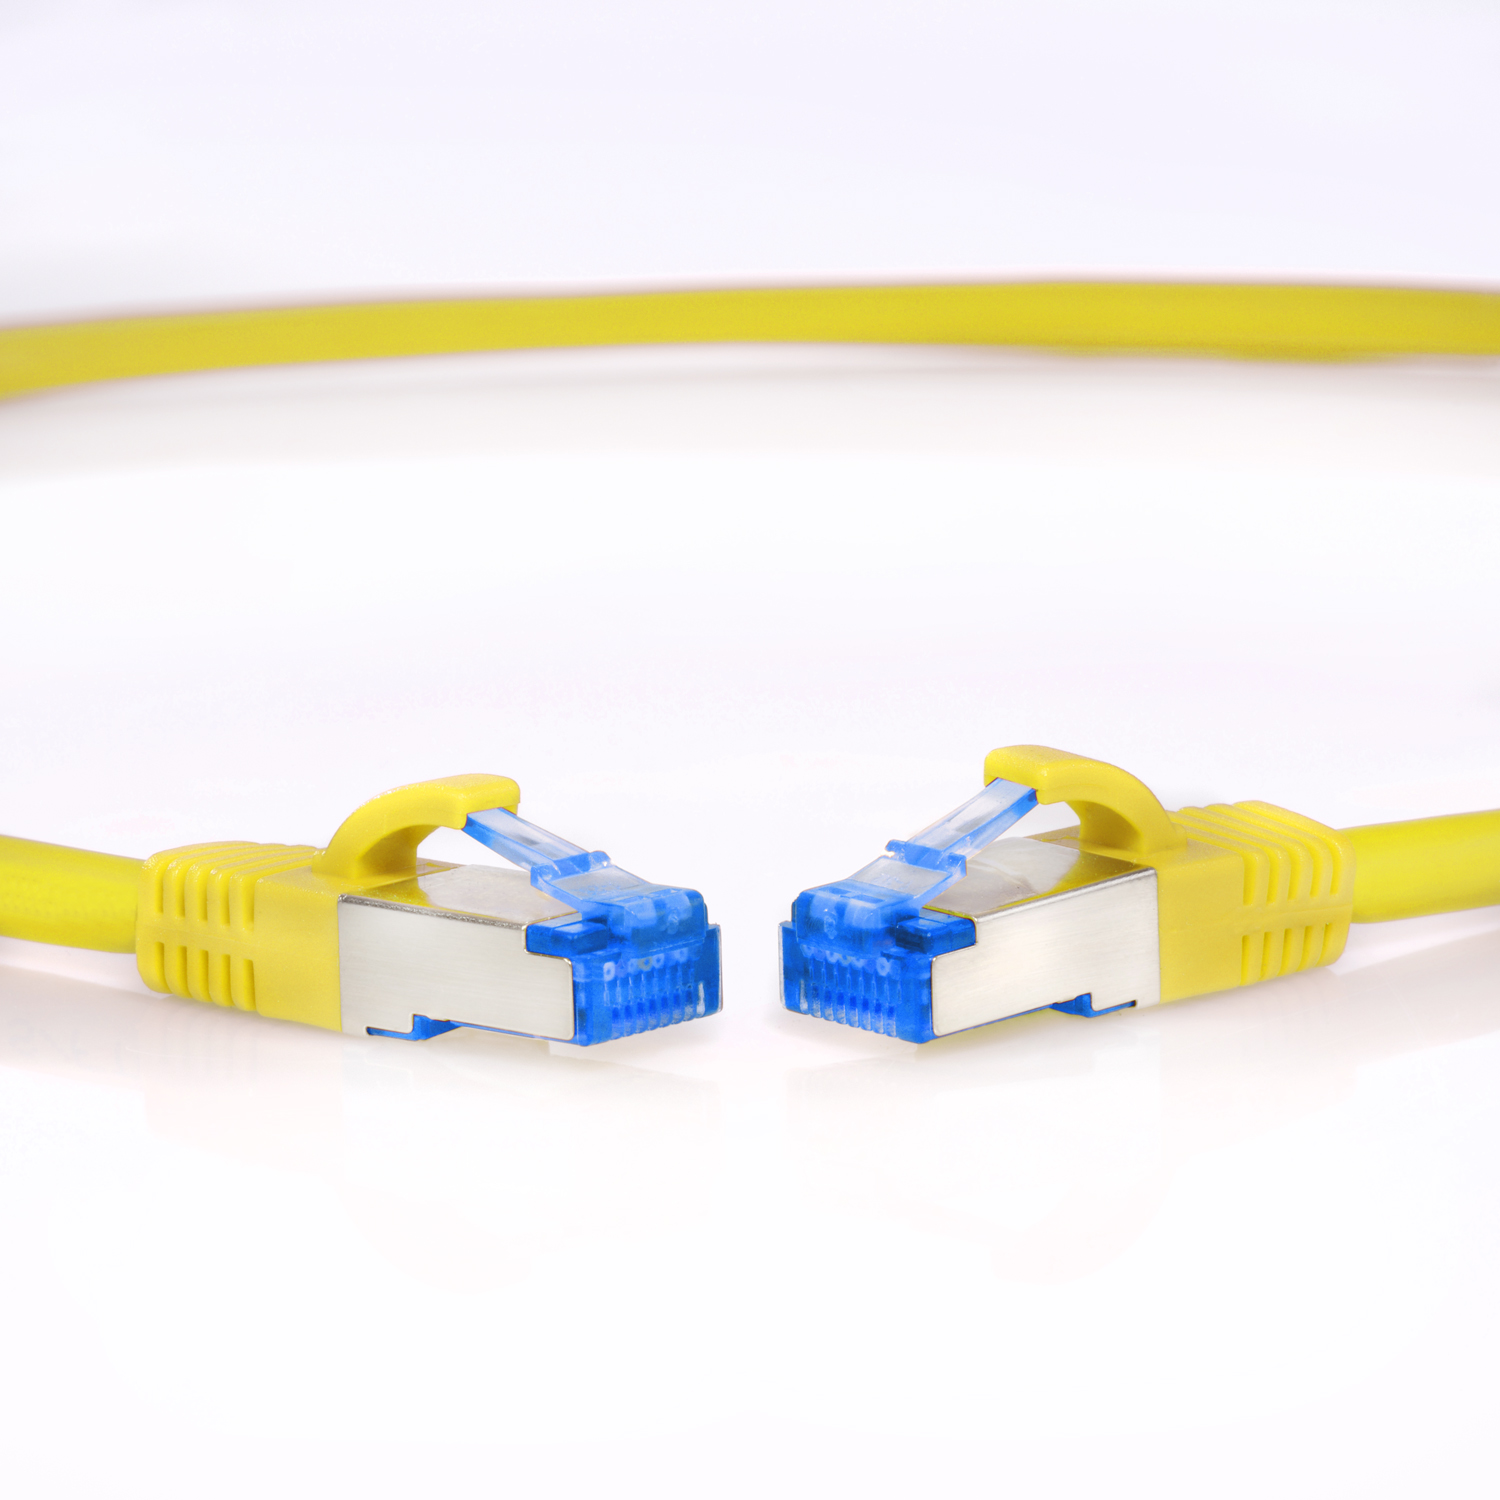 Netzwerkkabel, S/FTP / 7,5m Patchkabel TPFNET Netzwerkkabel 10GBit, gelb, 7,5 m